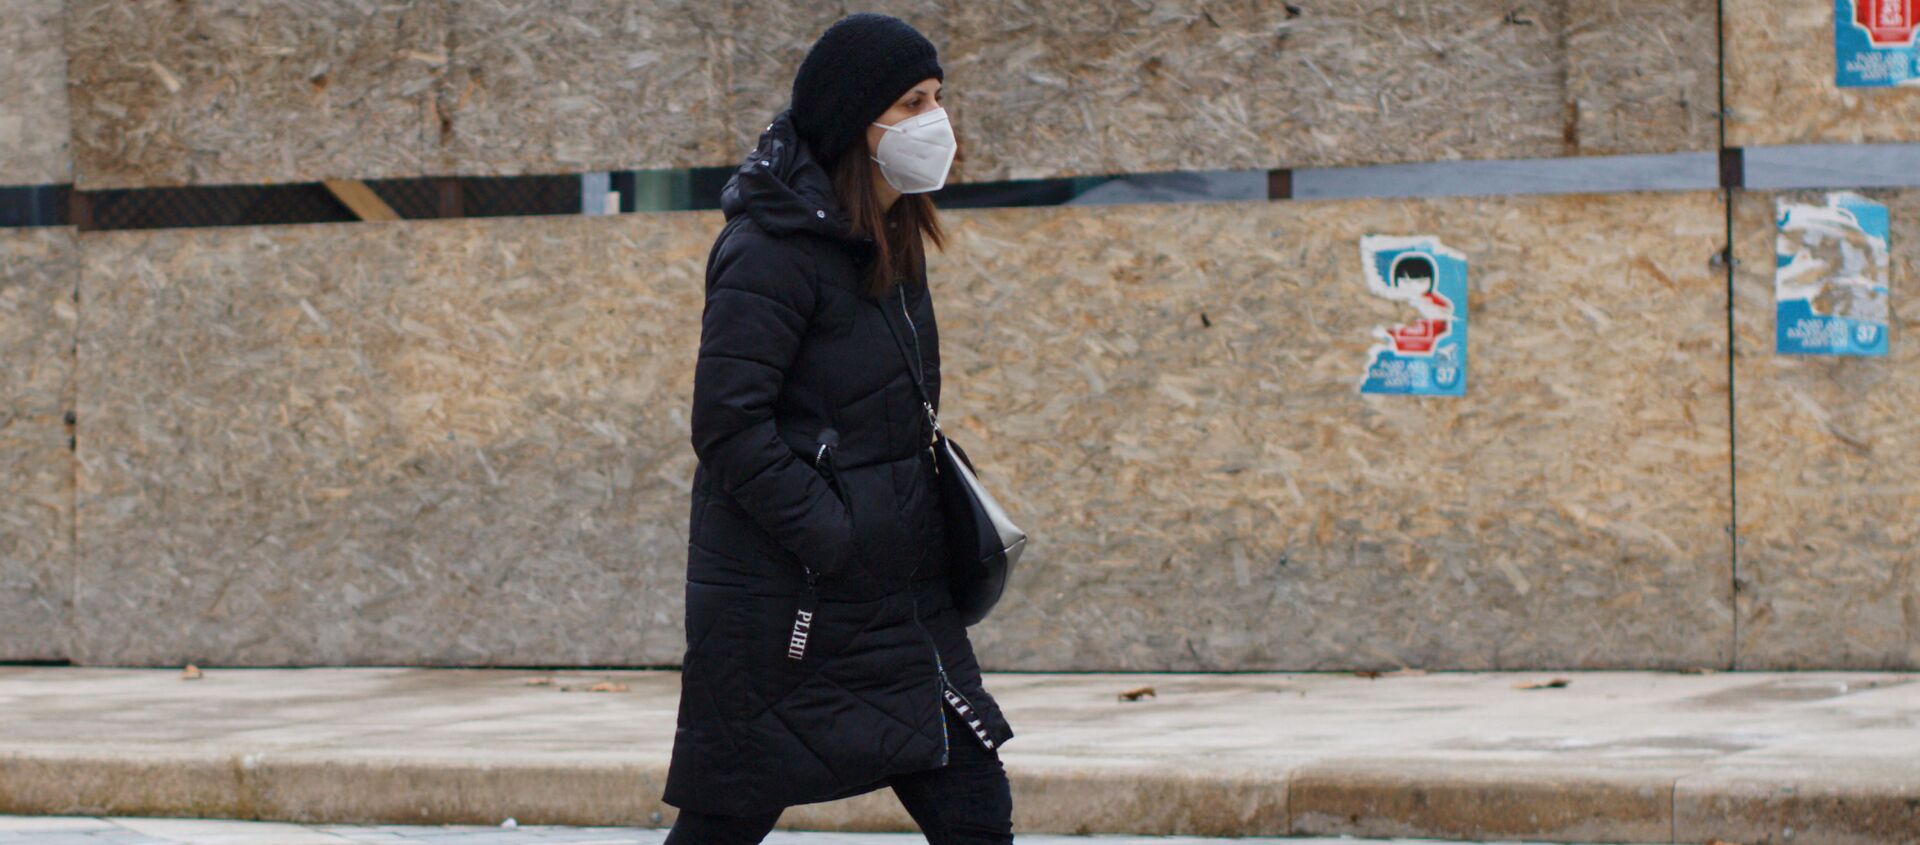 Эпидемия коронавируса - женщина в маске идет по улице - Sputnik Грузия, 1920, 24.02.2021